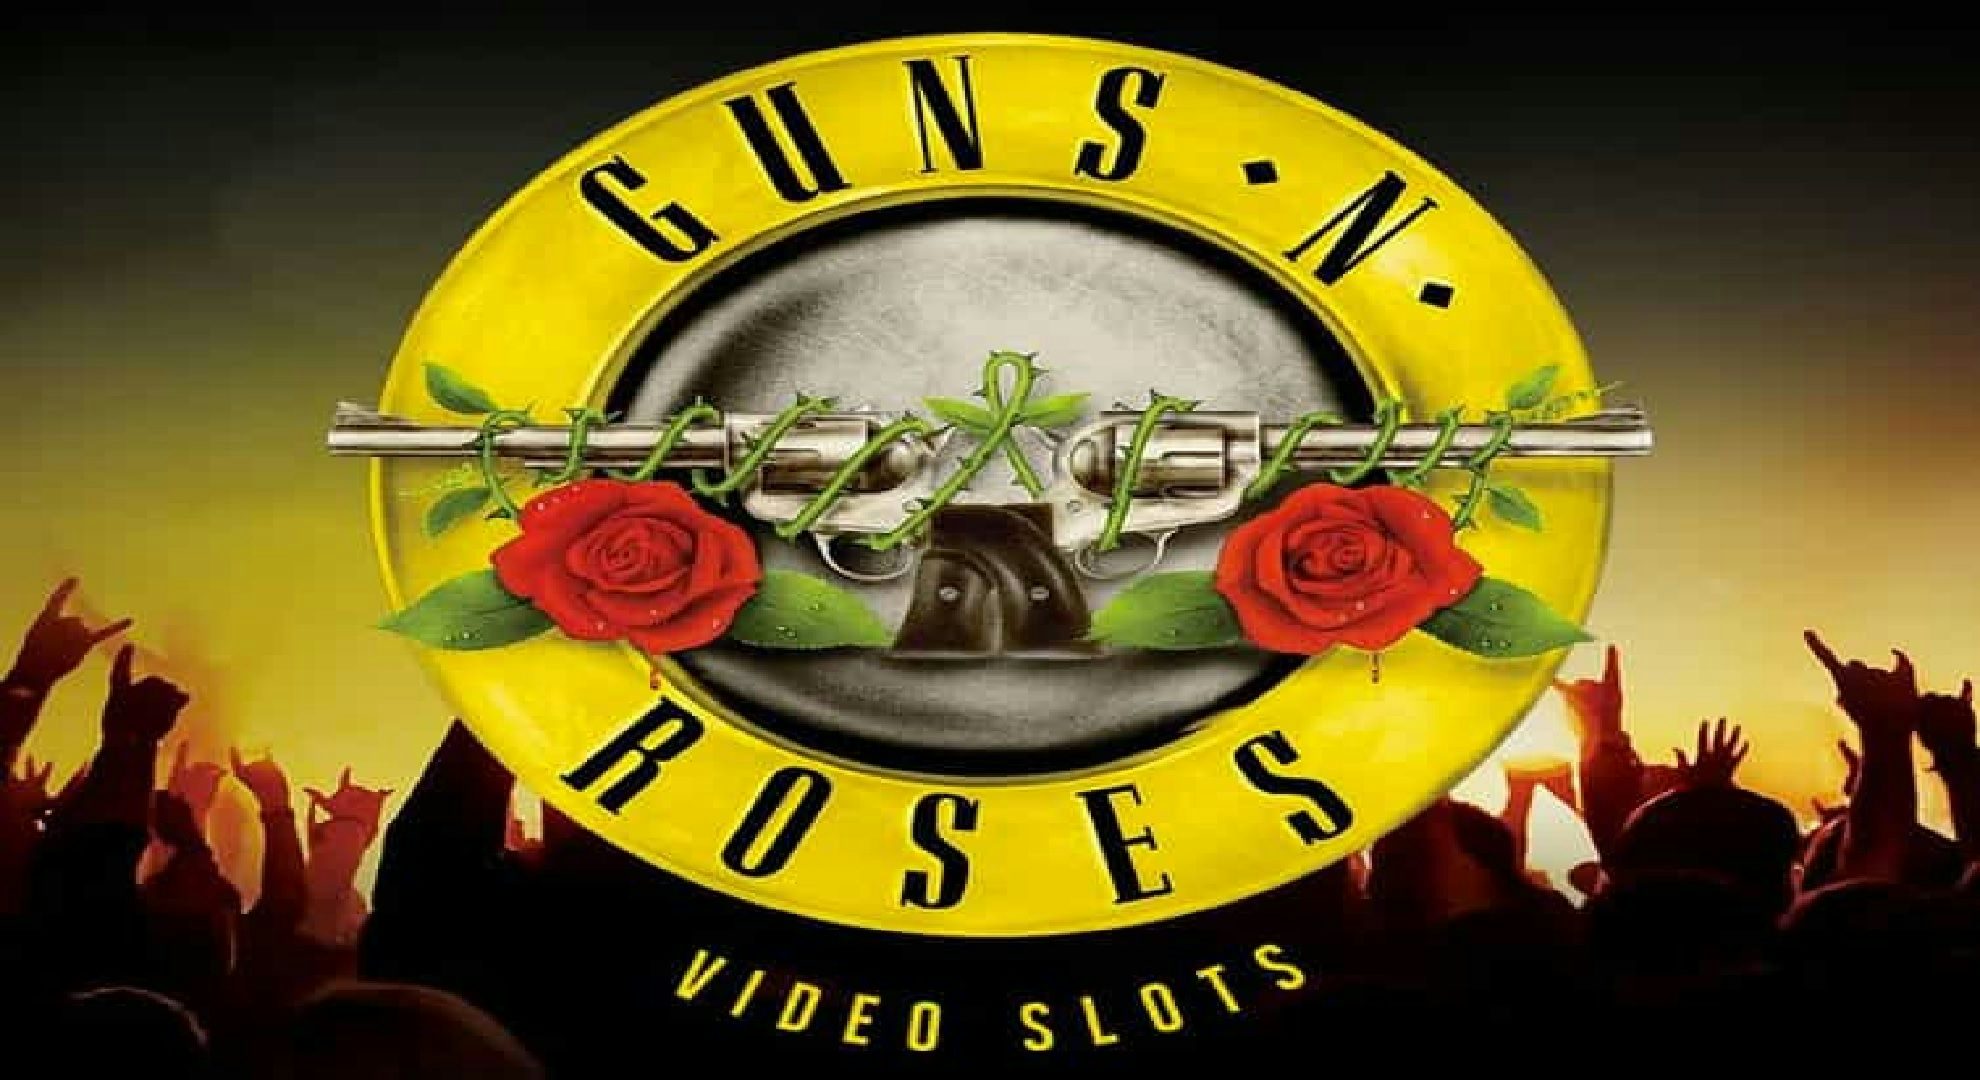 Guns 'N' Roses